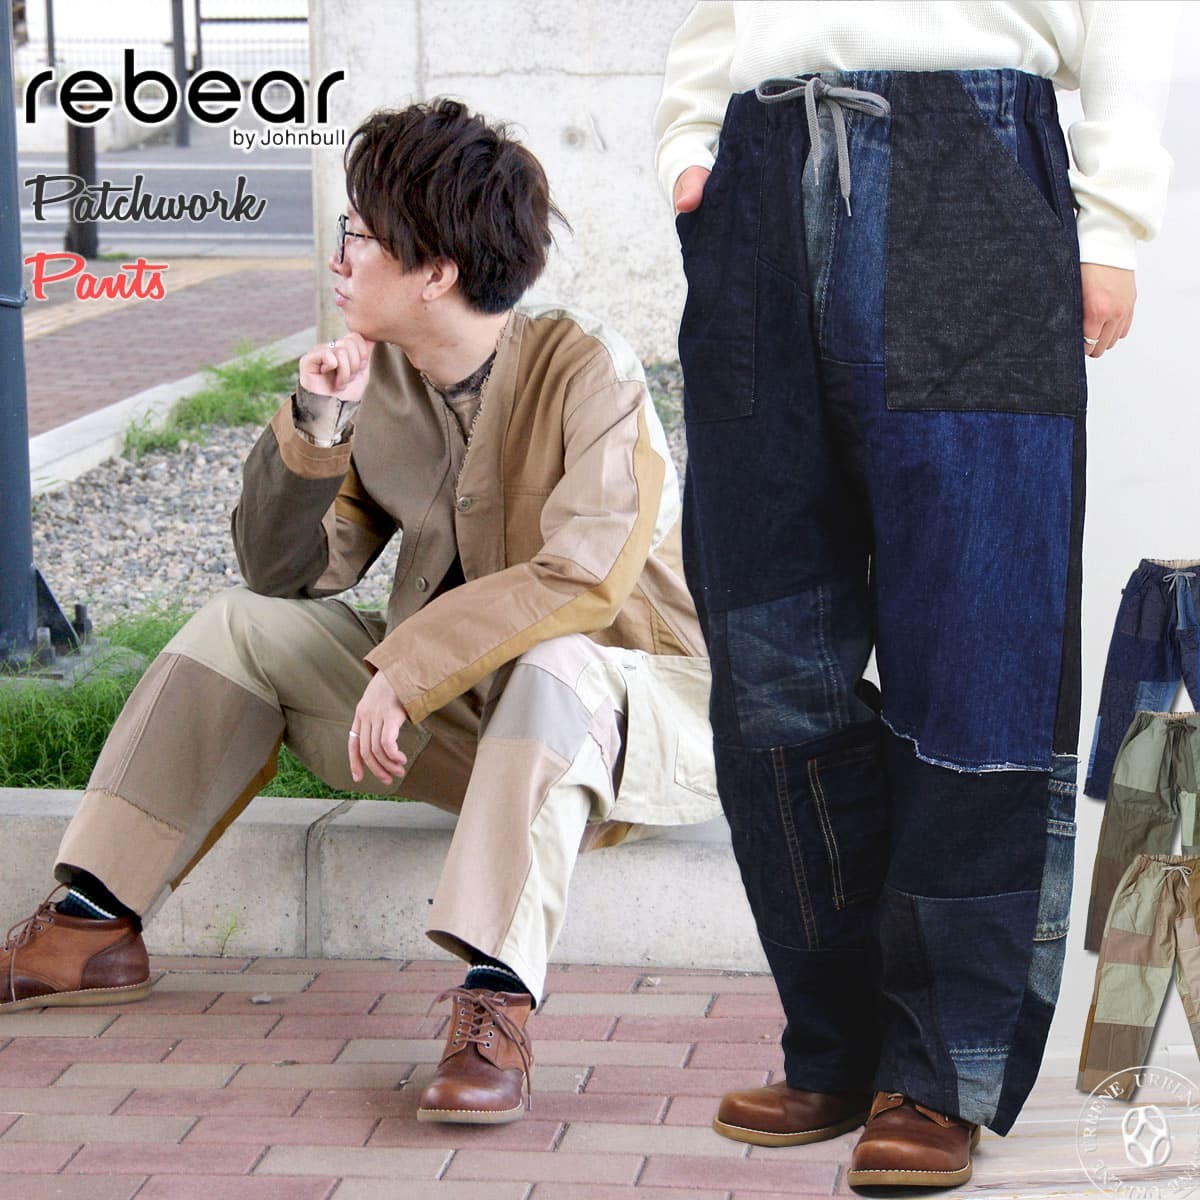 リベアバイジョンブル rebear by Johnbull メンズ レディース パッチワークパンツ x1025 ストレート ワイドパンツ イージーパンツ  :rebear-x1025:ジーンズカジュアル アーベン-メンズレディース 通販 